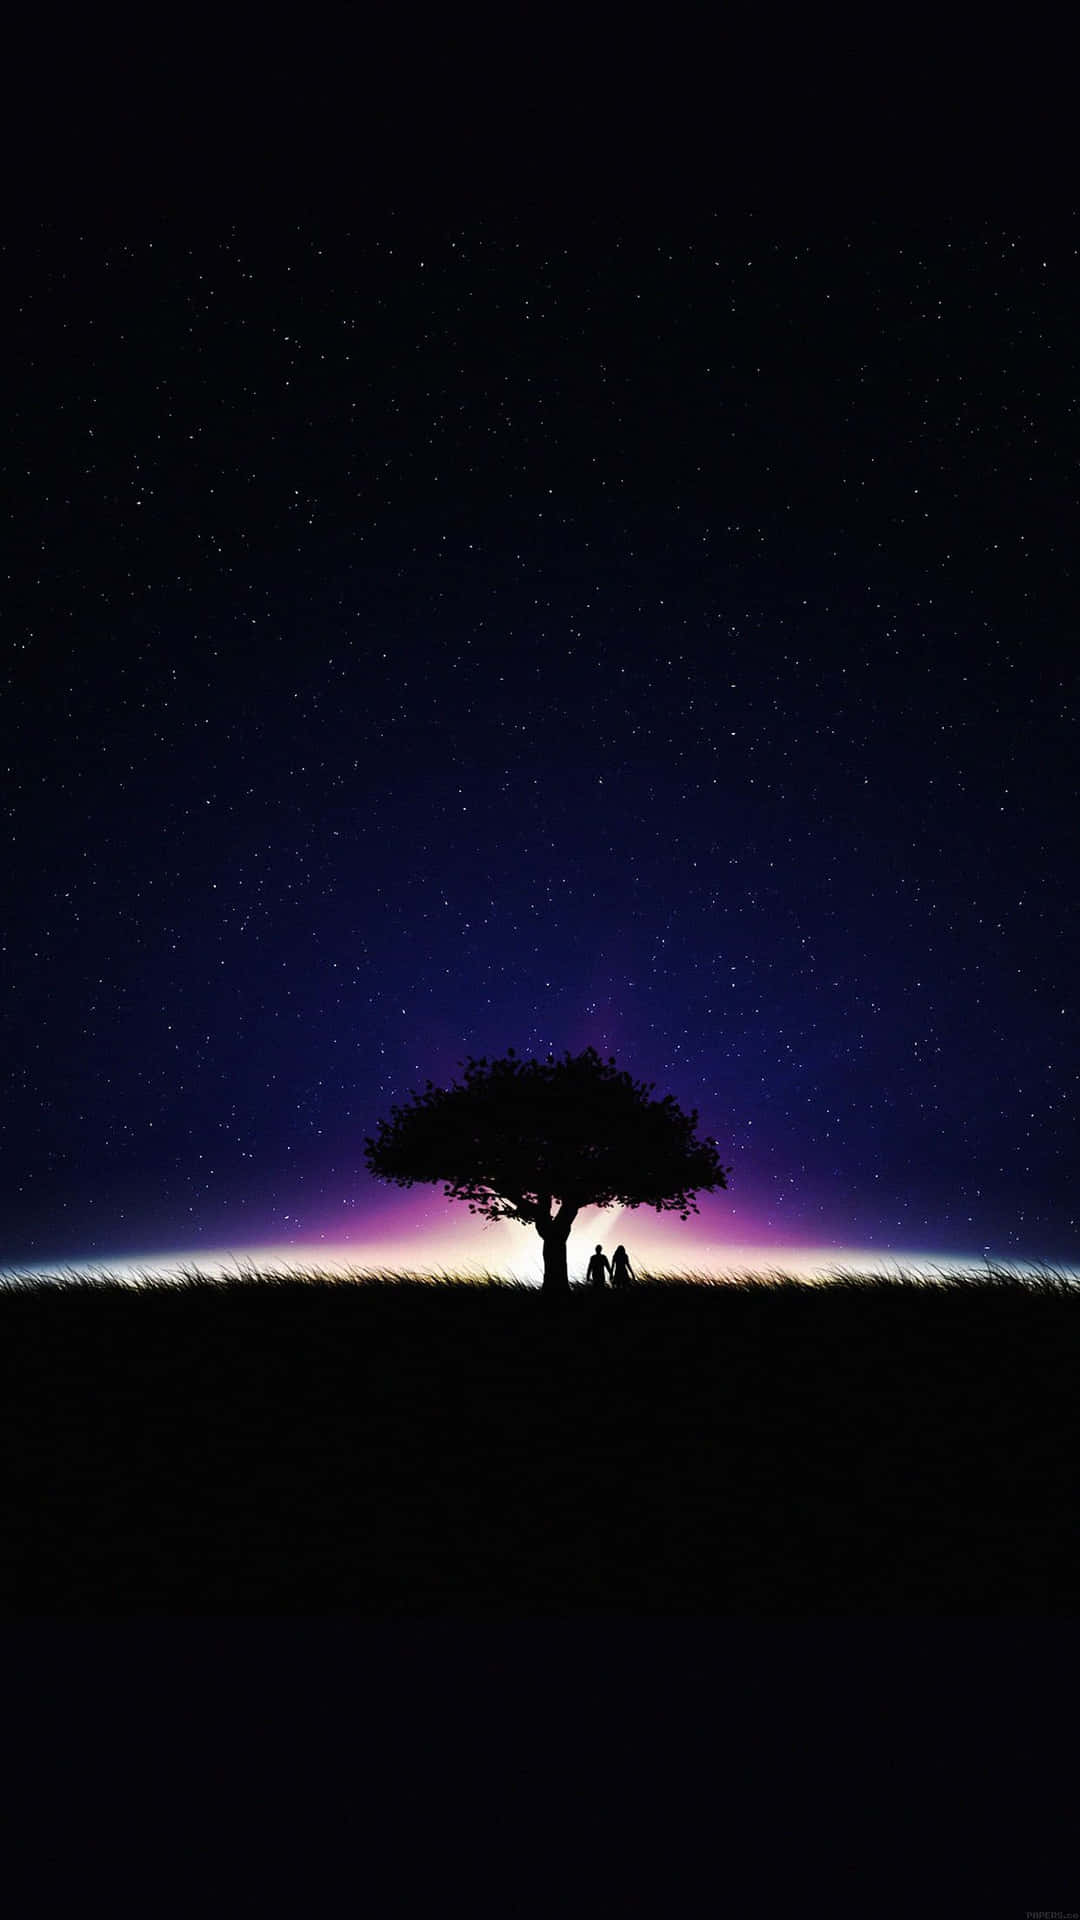 Amantesbajo Un Árbol En Una Noche Estrellada Y Oscura. Fondo de pantalla